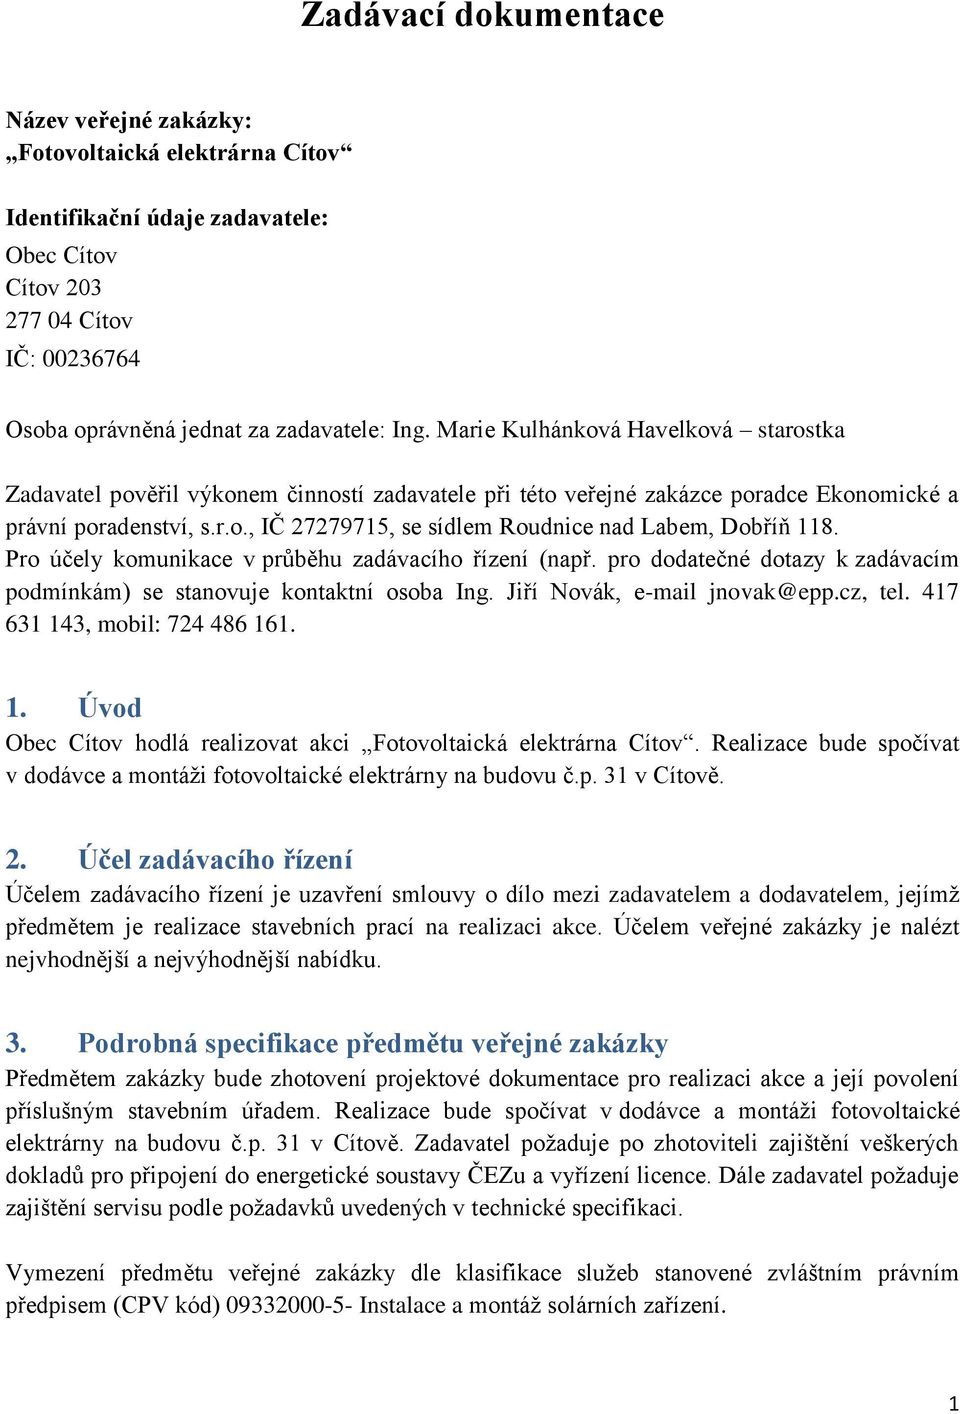 Pro účely komunikace v průběhu zadávacího řízení (např. pro dodatečné dotazy k zadávacím podmínkám) se stanovuje kontaktní osoba Ing. Jiří Novák, e-mail jnovak@epp.cz, tel.